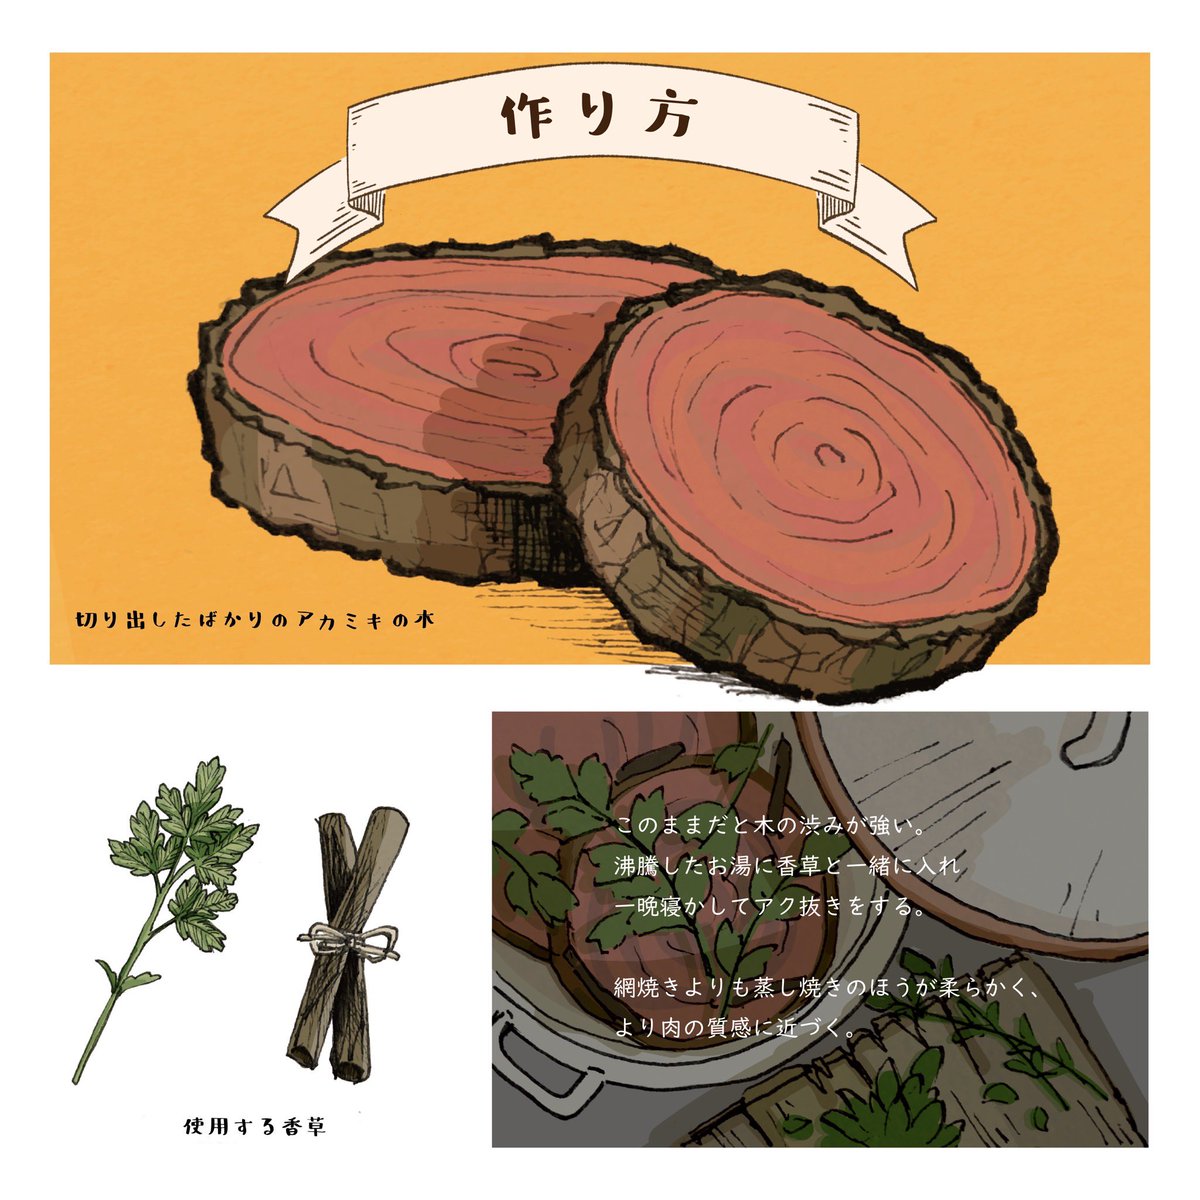 「切り株ステーキ 」|遊ハち(5/20デザフェス)のイラスト